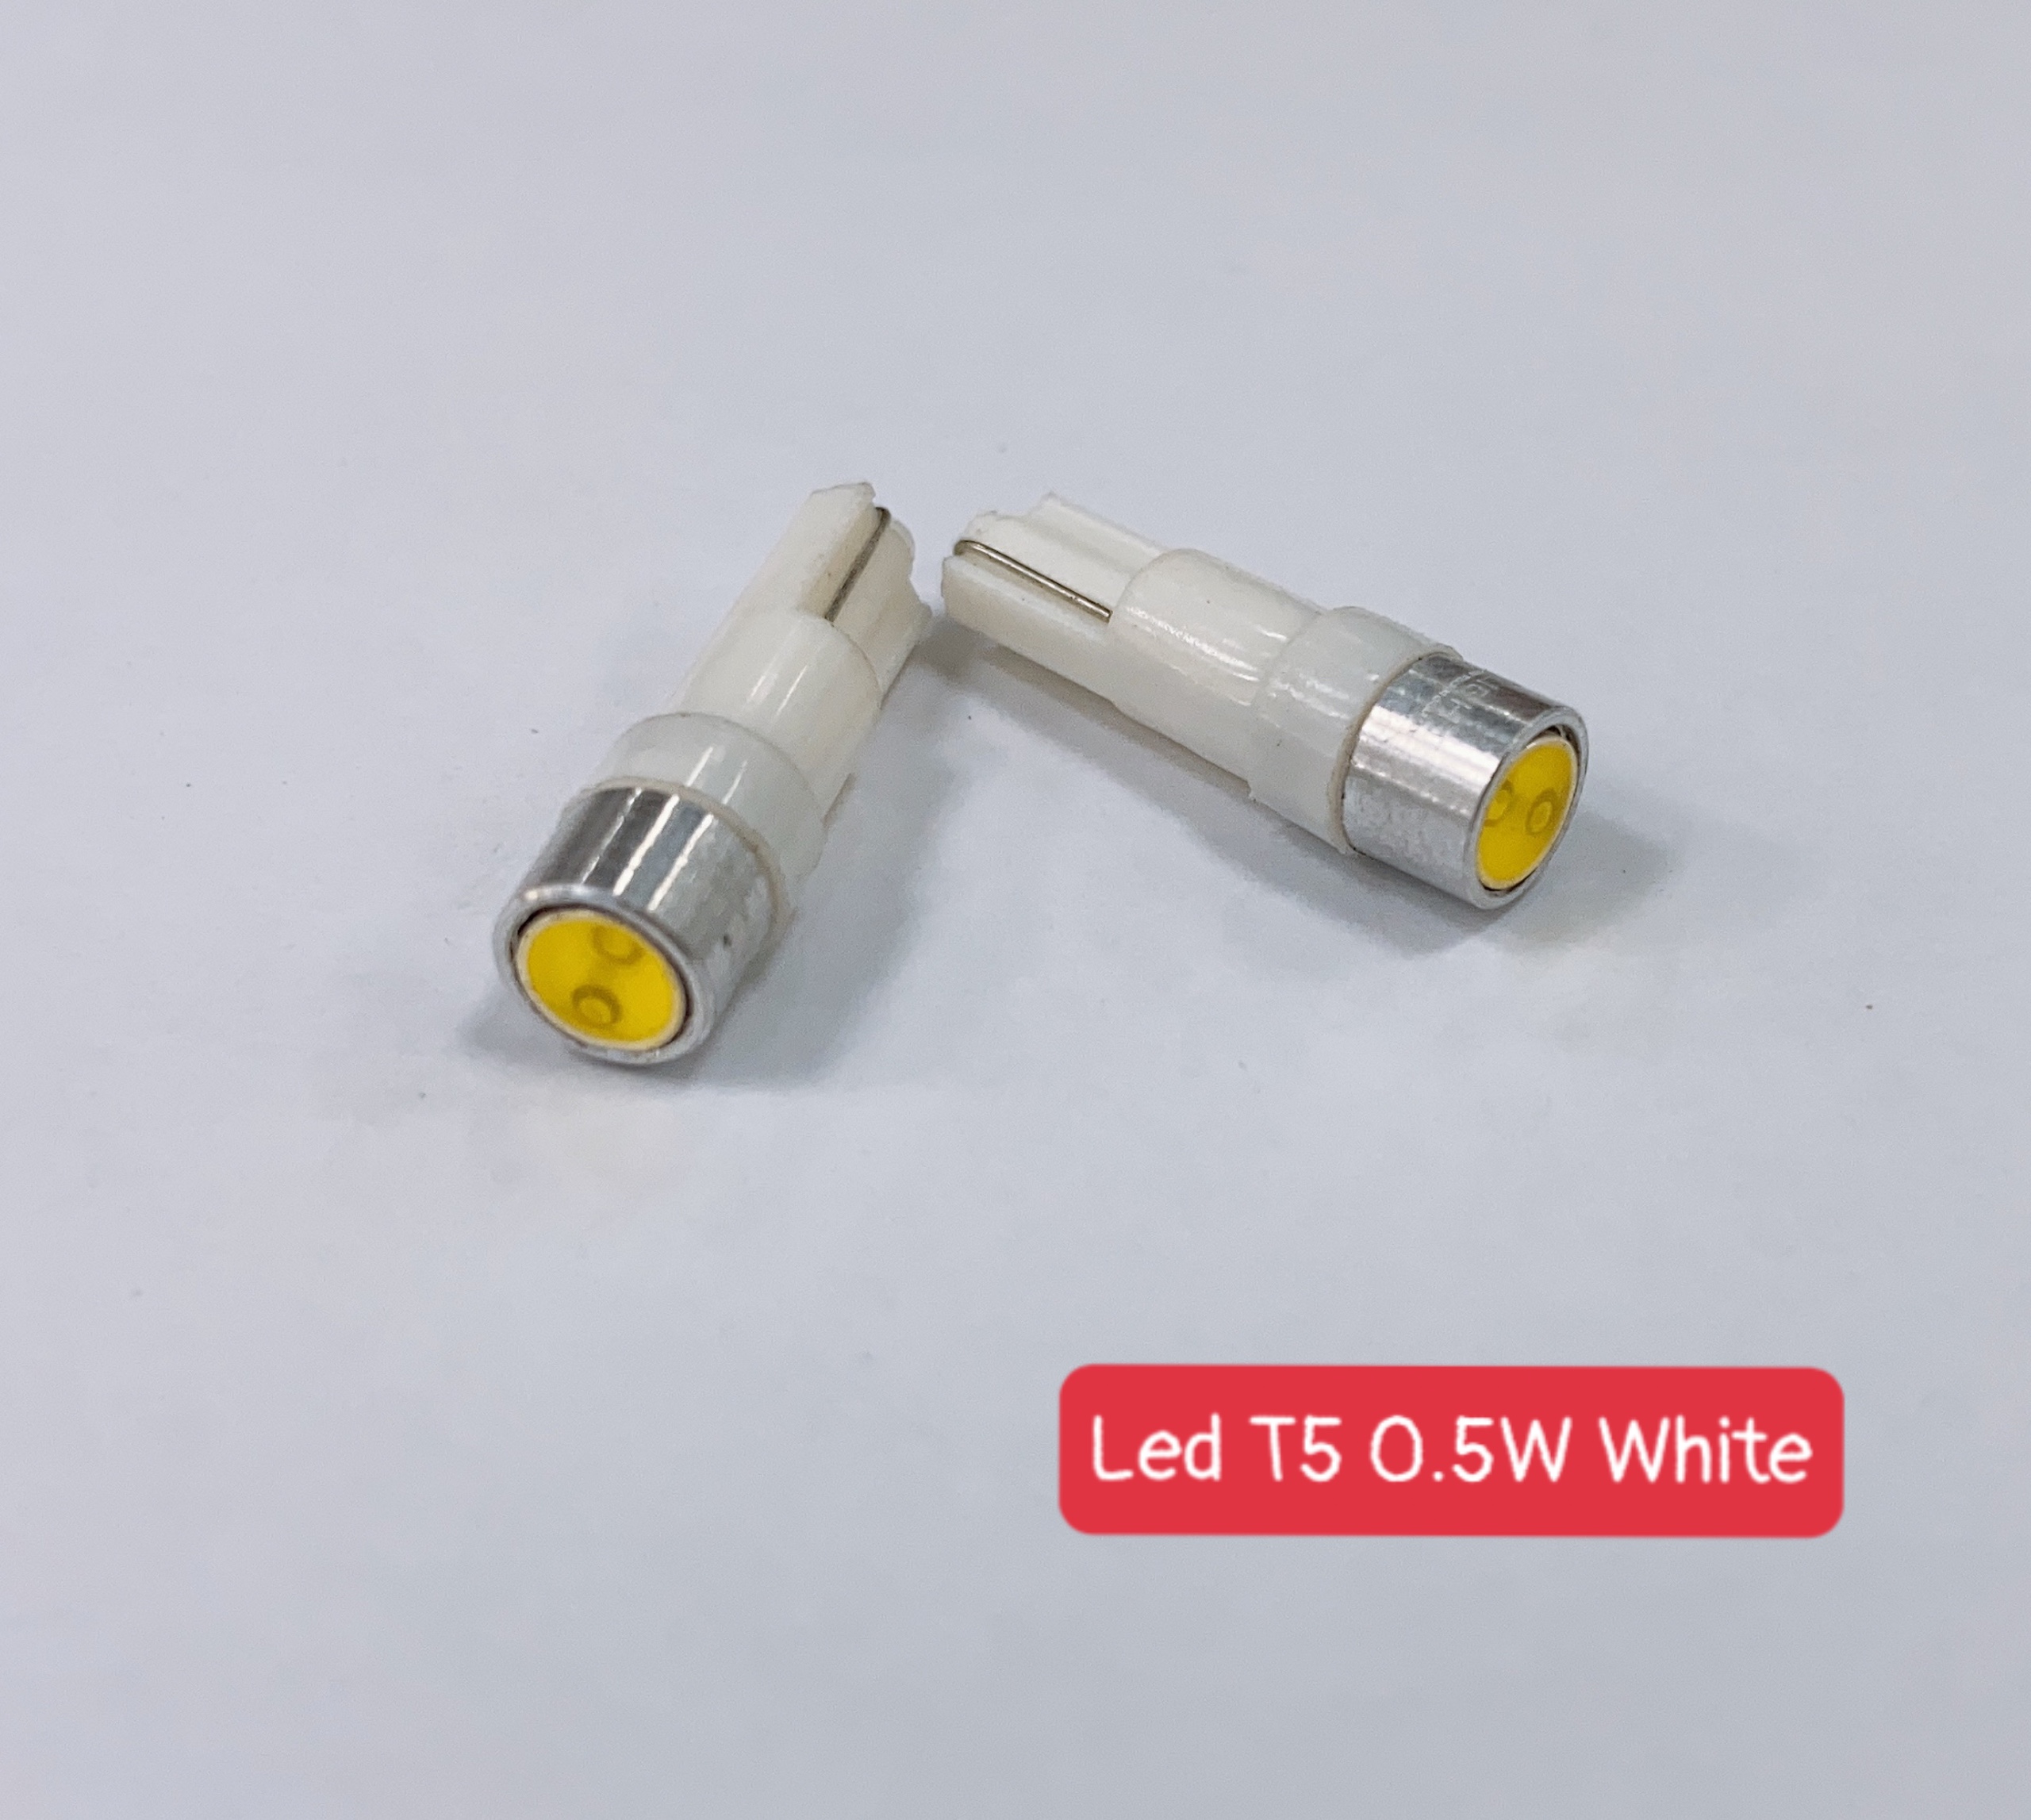 LED T5 0.5W